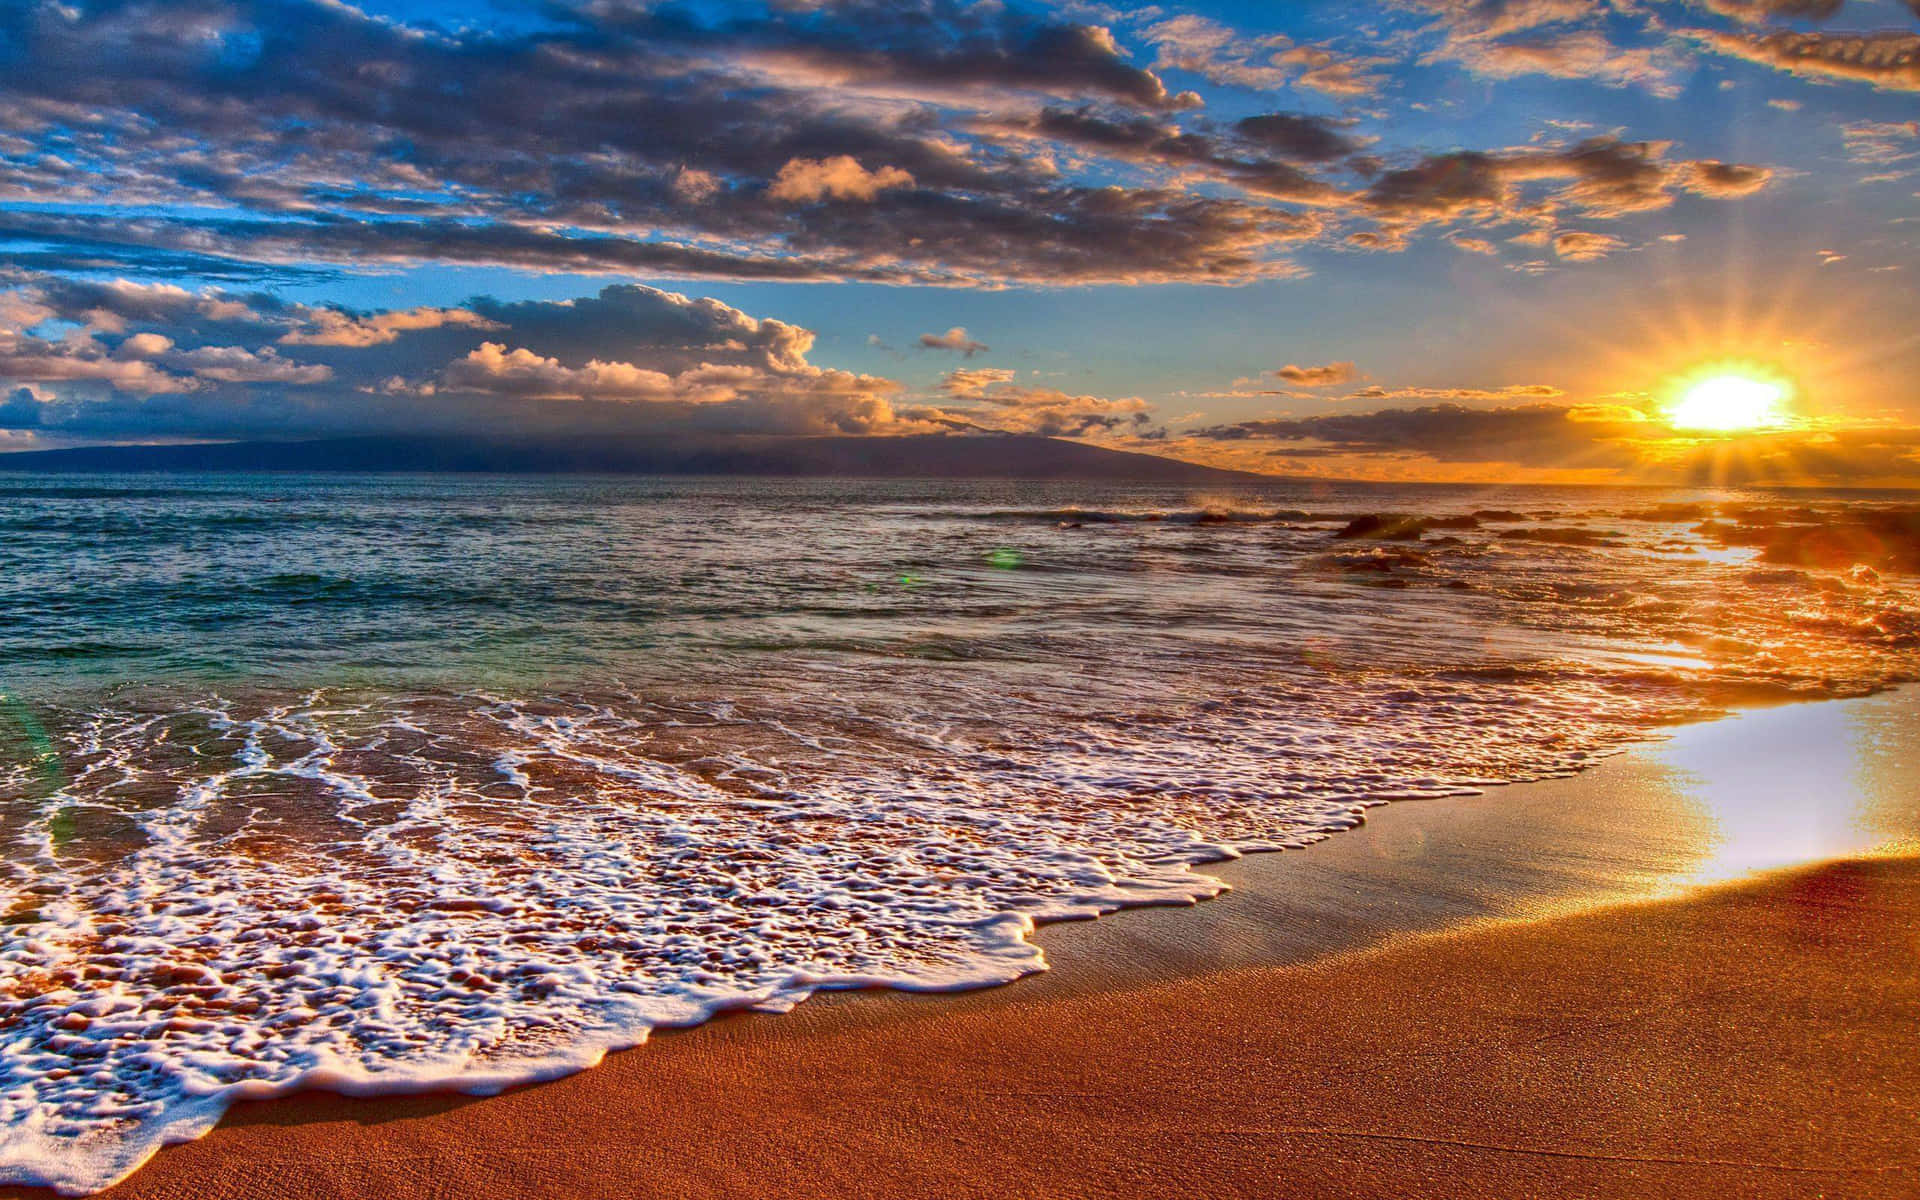 Nyd en smuk strand solnedgang med denne tapet! Wallpaper